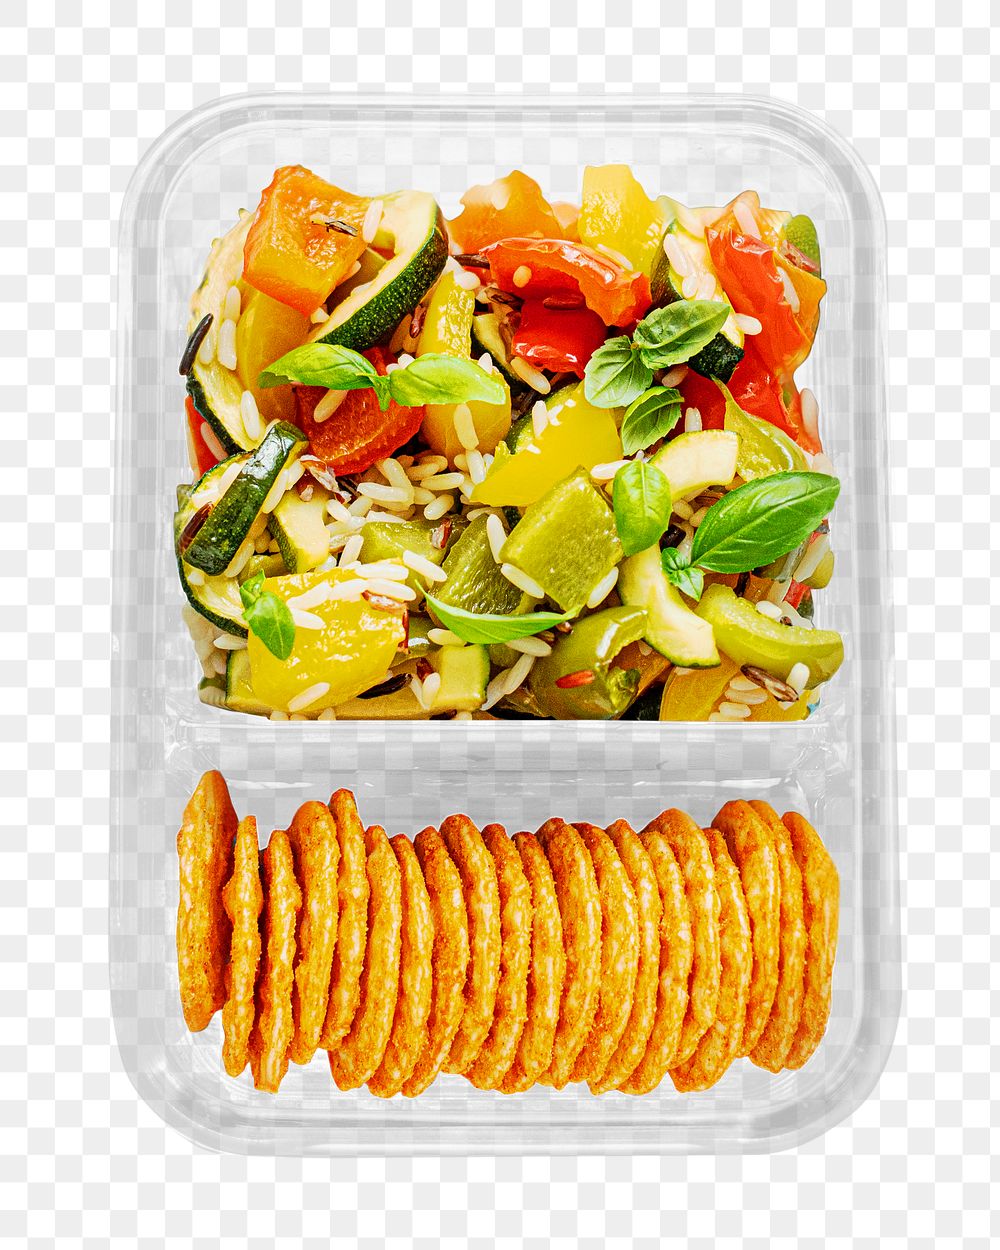 PNG Homemade roasted vegetables salad, collage element, transparent background